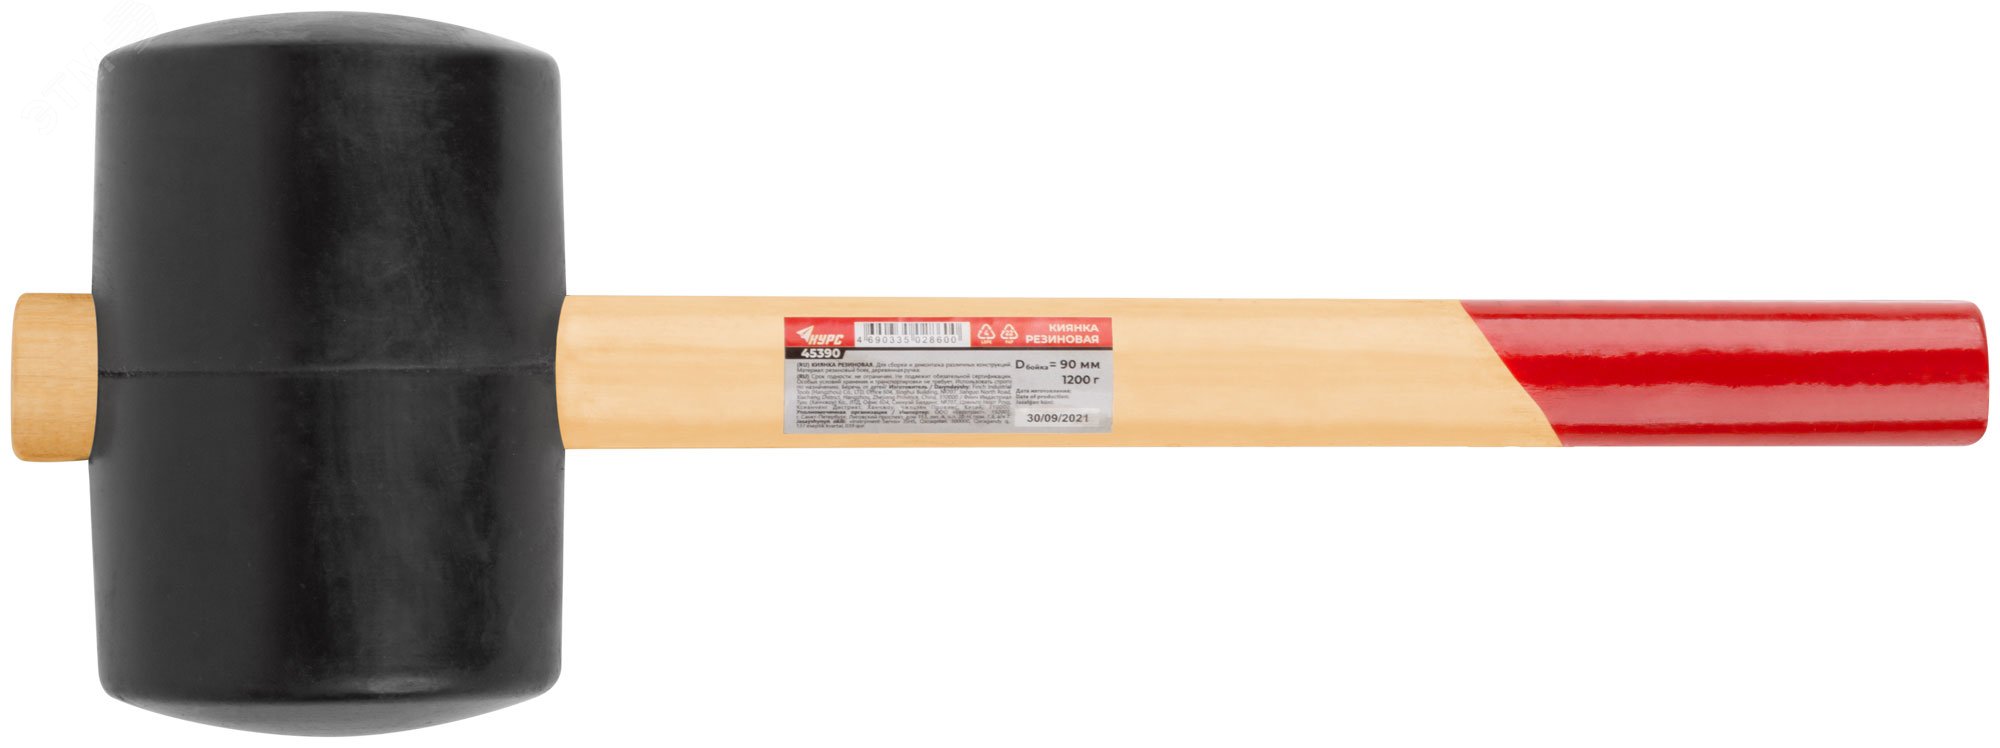 Киянка резиновая, деревянная ручка 90 мм (1200 гр) 45390 КУРС - превью 3